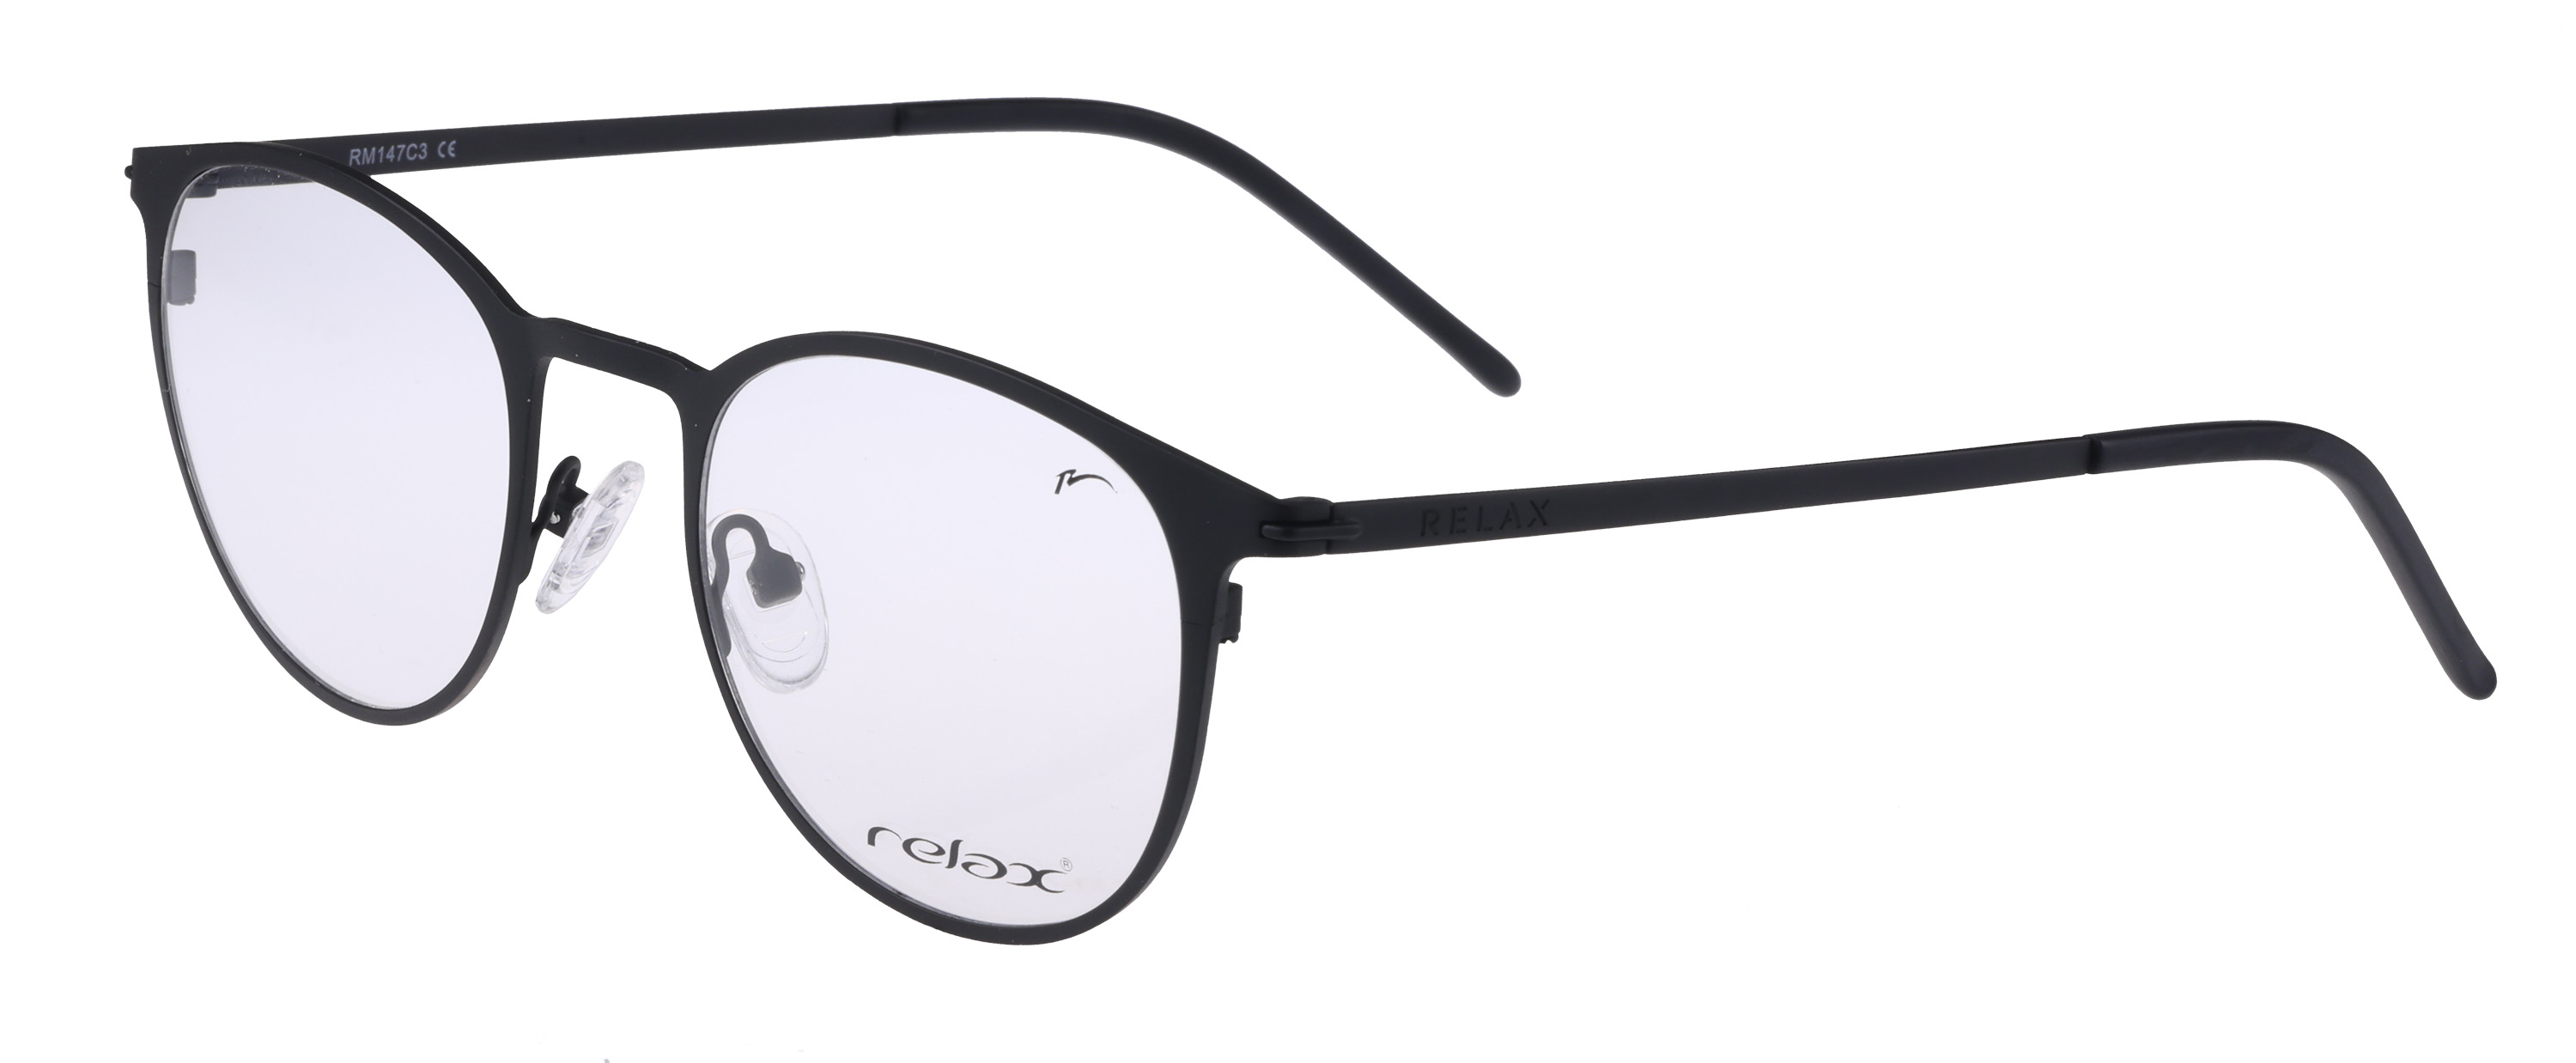 Optical frames Relax Pells  RM147C3